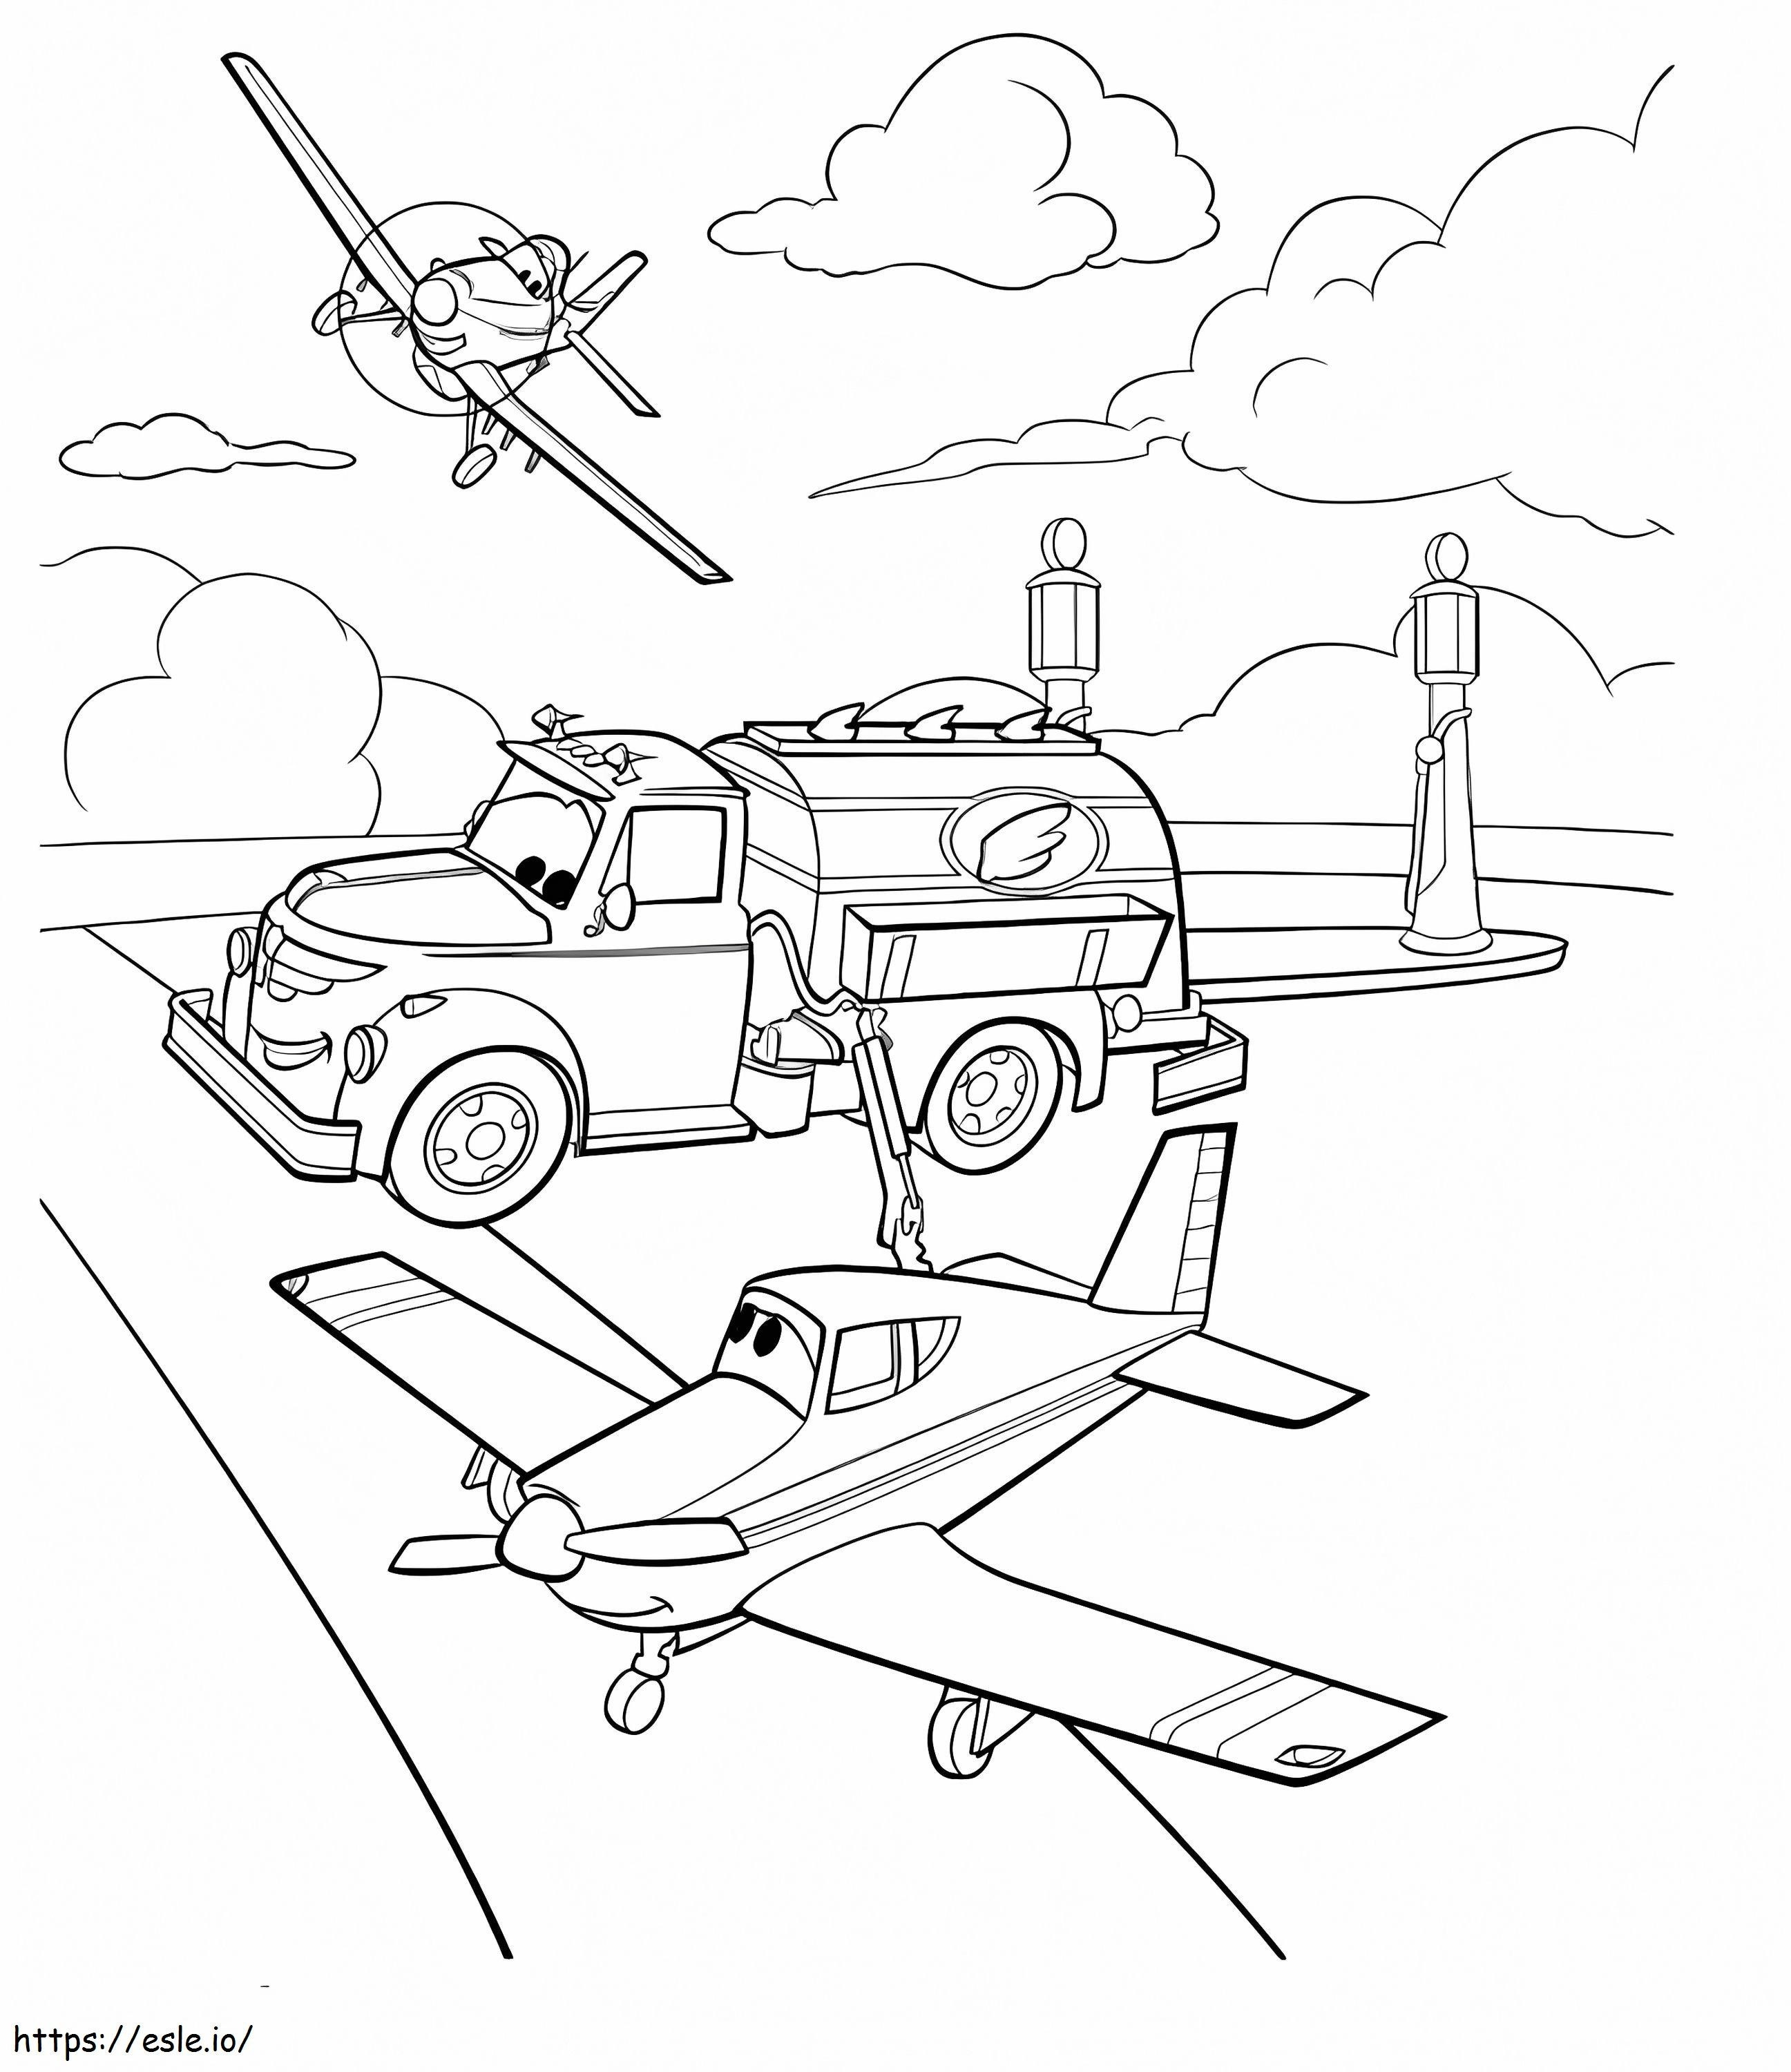 Aviões de desenho animado para colorir